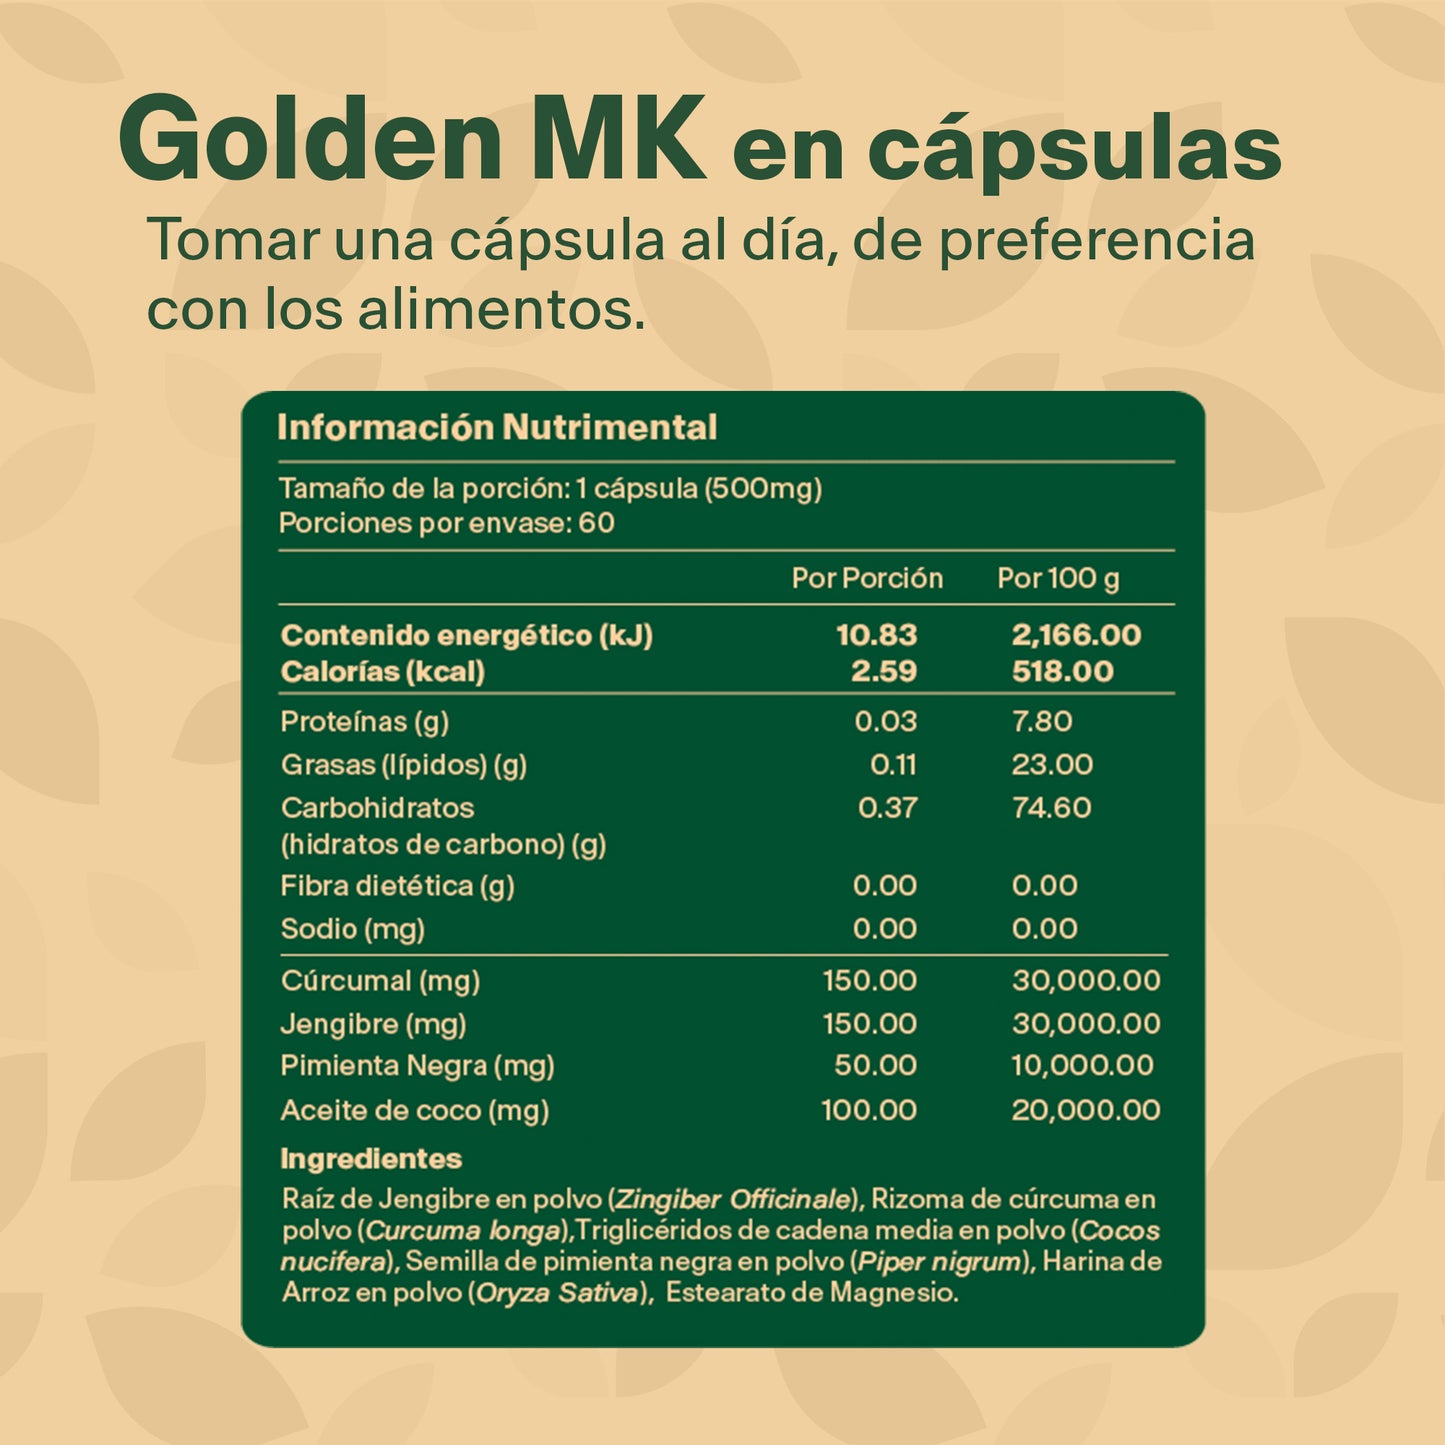 GOLDEN MK |Cúrcuma, Jengibre, Pimienta y Aceite de Coco